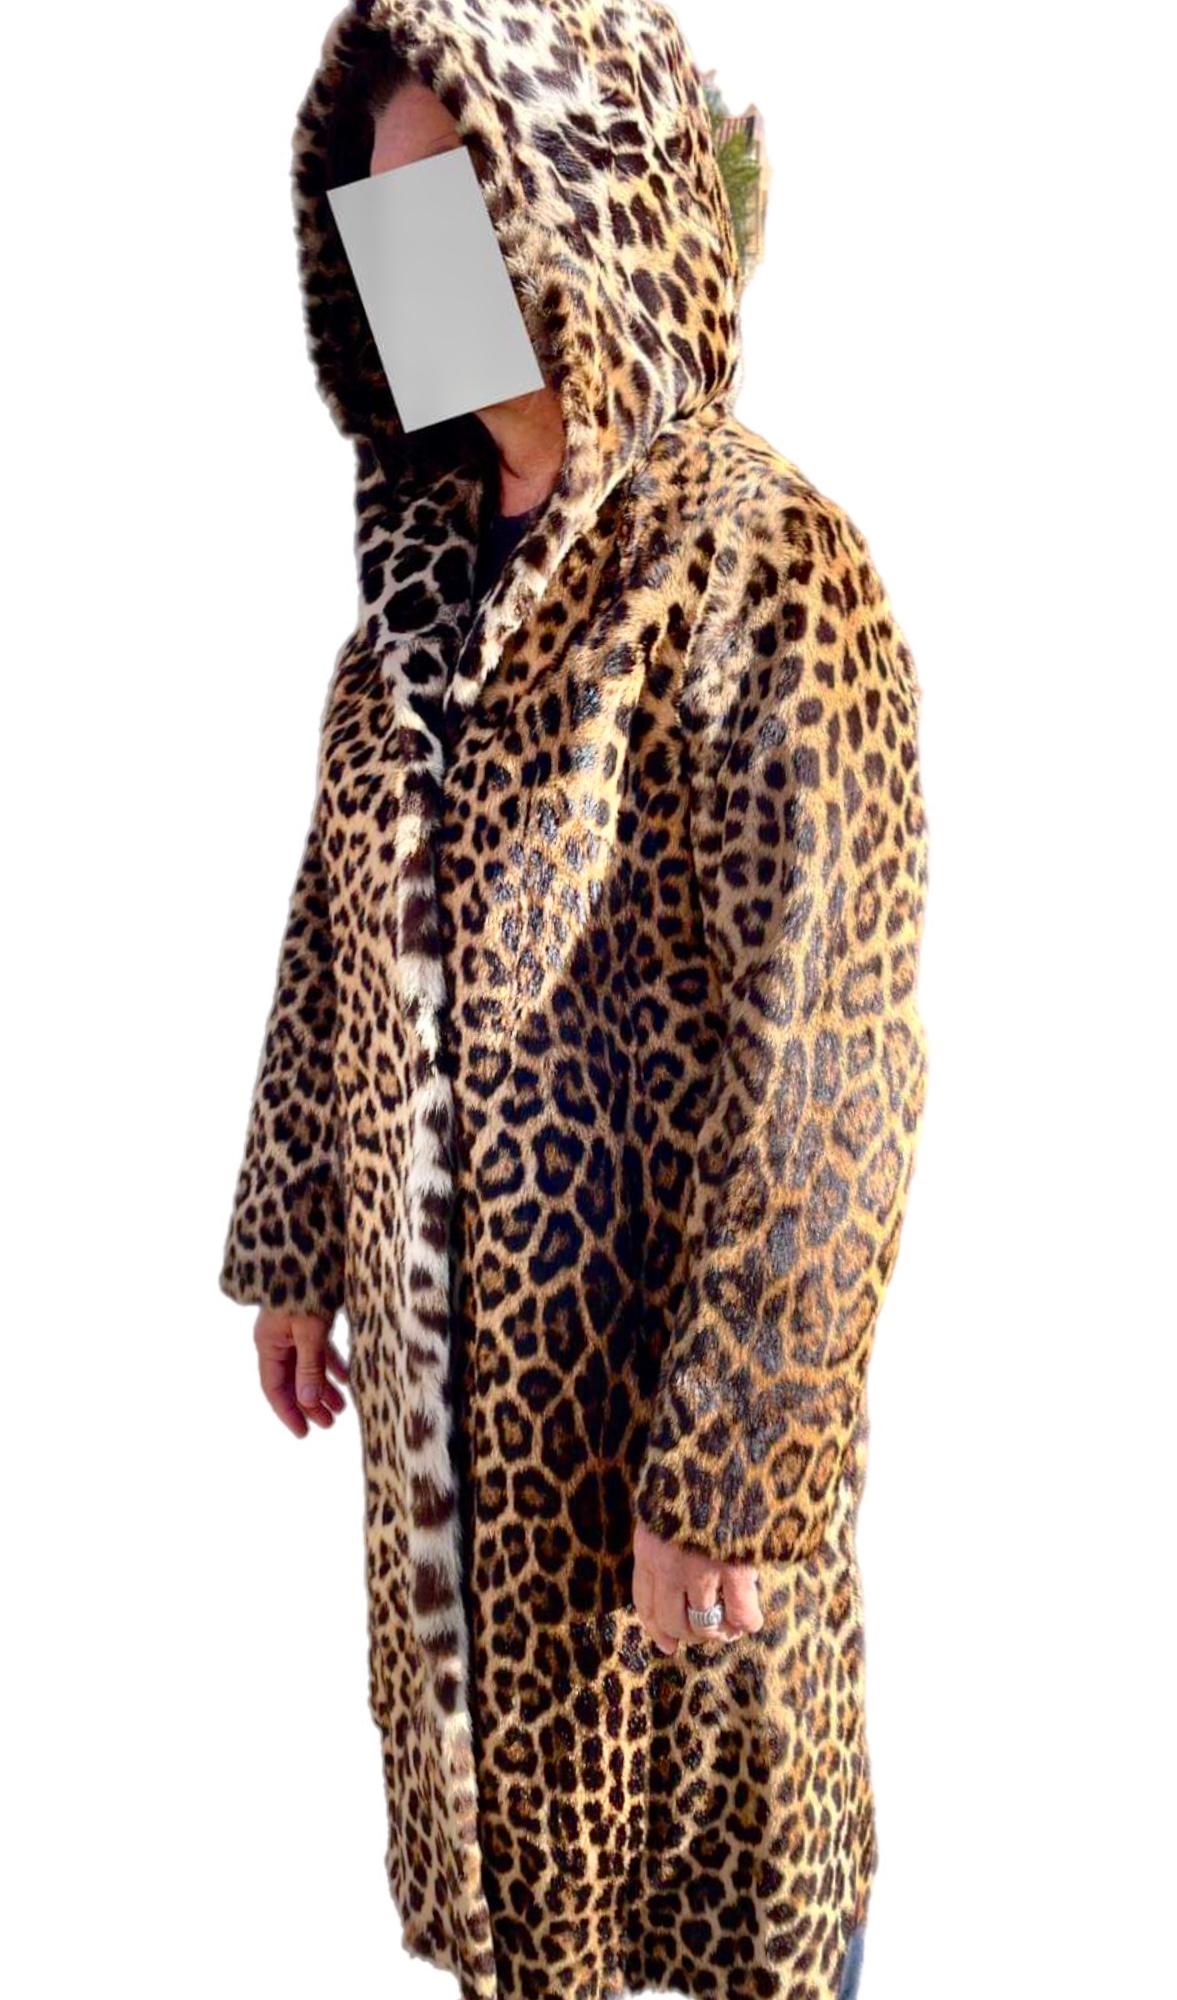 DESCRIPTION DU PRODUIT :

Manteau vintage en fourrure de léopard taille 12

Condition : Etat neuf

Fermeture : Fermoir en métal

Couleur : brun orangé et noir

Matériau : Fourrure

Type de vêtement : manteau en fourrure de léopard 

Manches :